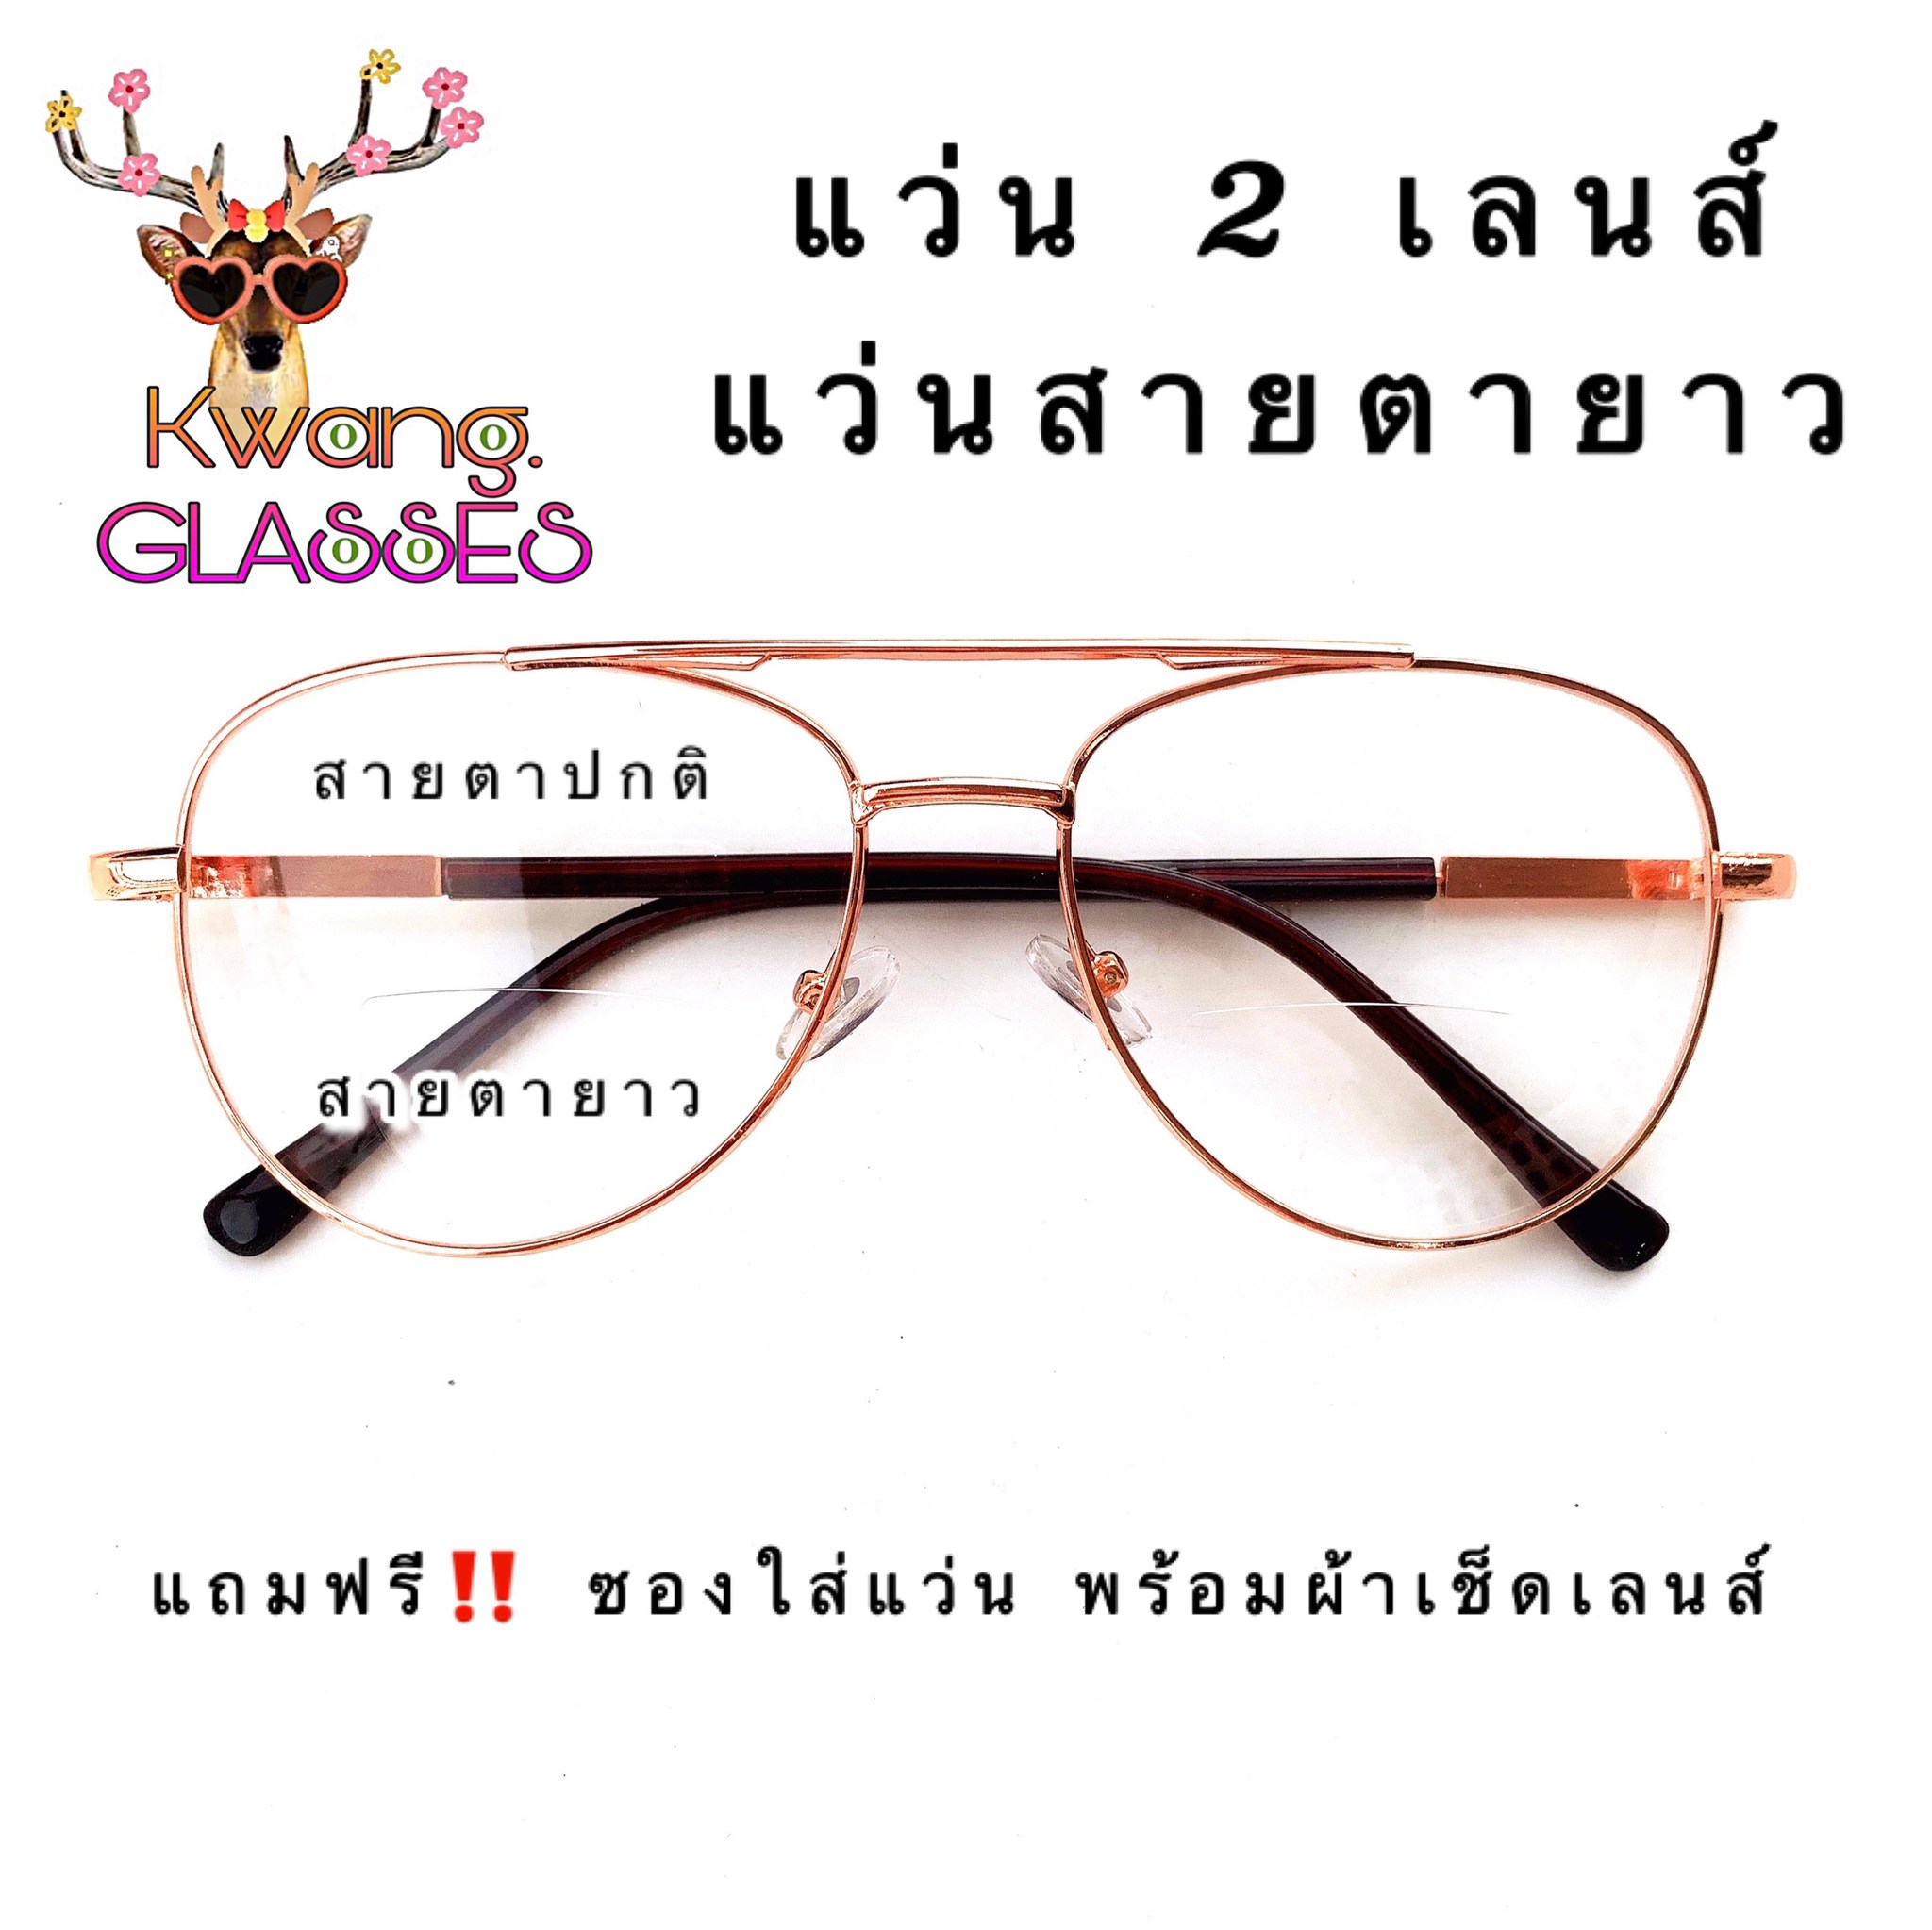 แว่นสายตายาว แว่น 2 เลนส์ Pilot เลนส์ใส แว่นทรงPilot มีตั้งแต่เลนส์ 50 ถึง 400 กดเลือกเลนส์ที่ตัวเลือกสินค้าได้เลย กดติดตาม แว่นตา Kwang.glasses